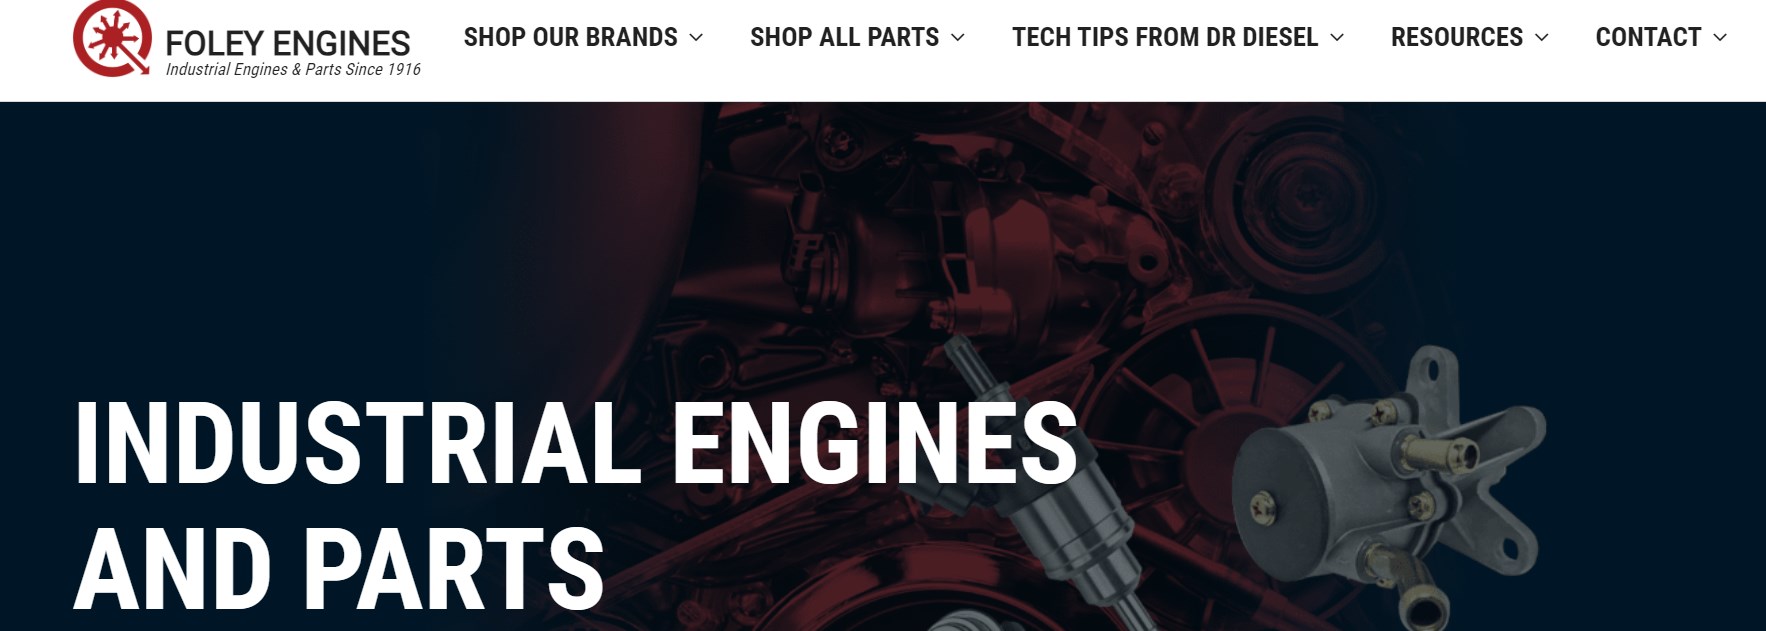 FOLEY ENGINES excavator engine assembly manufacturer brands